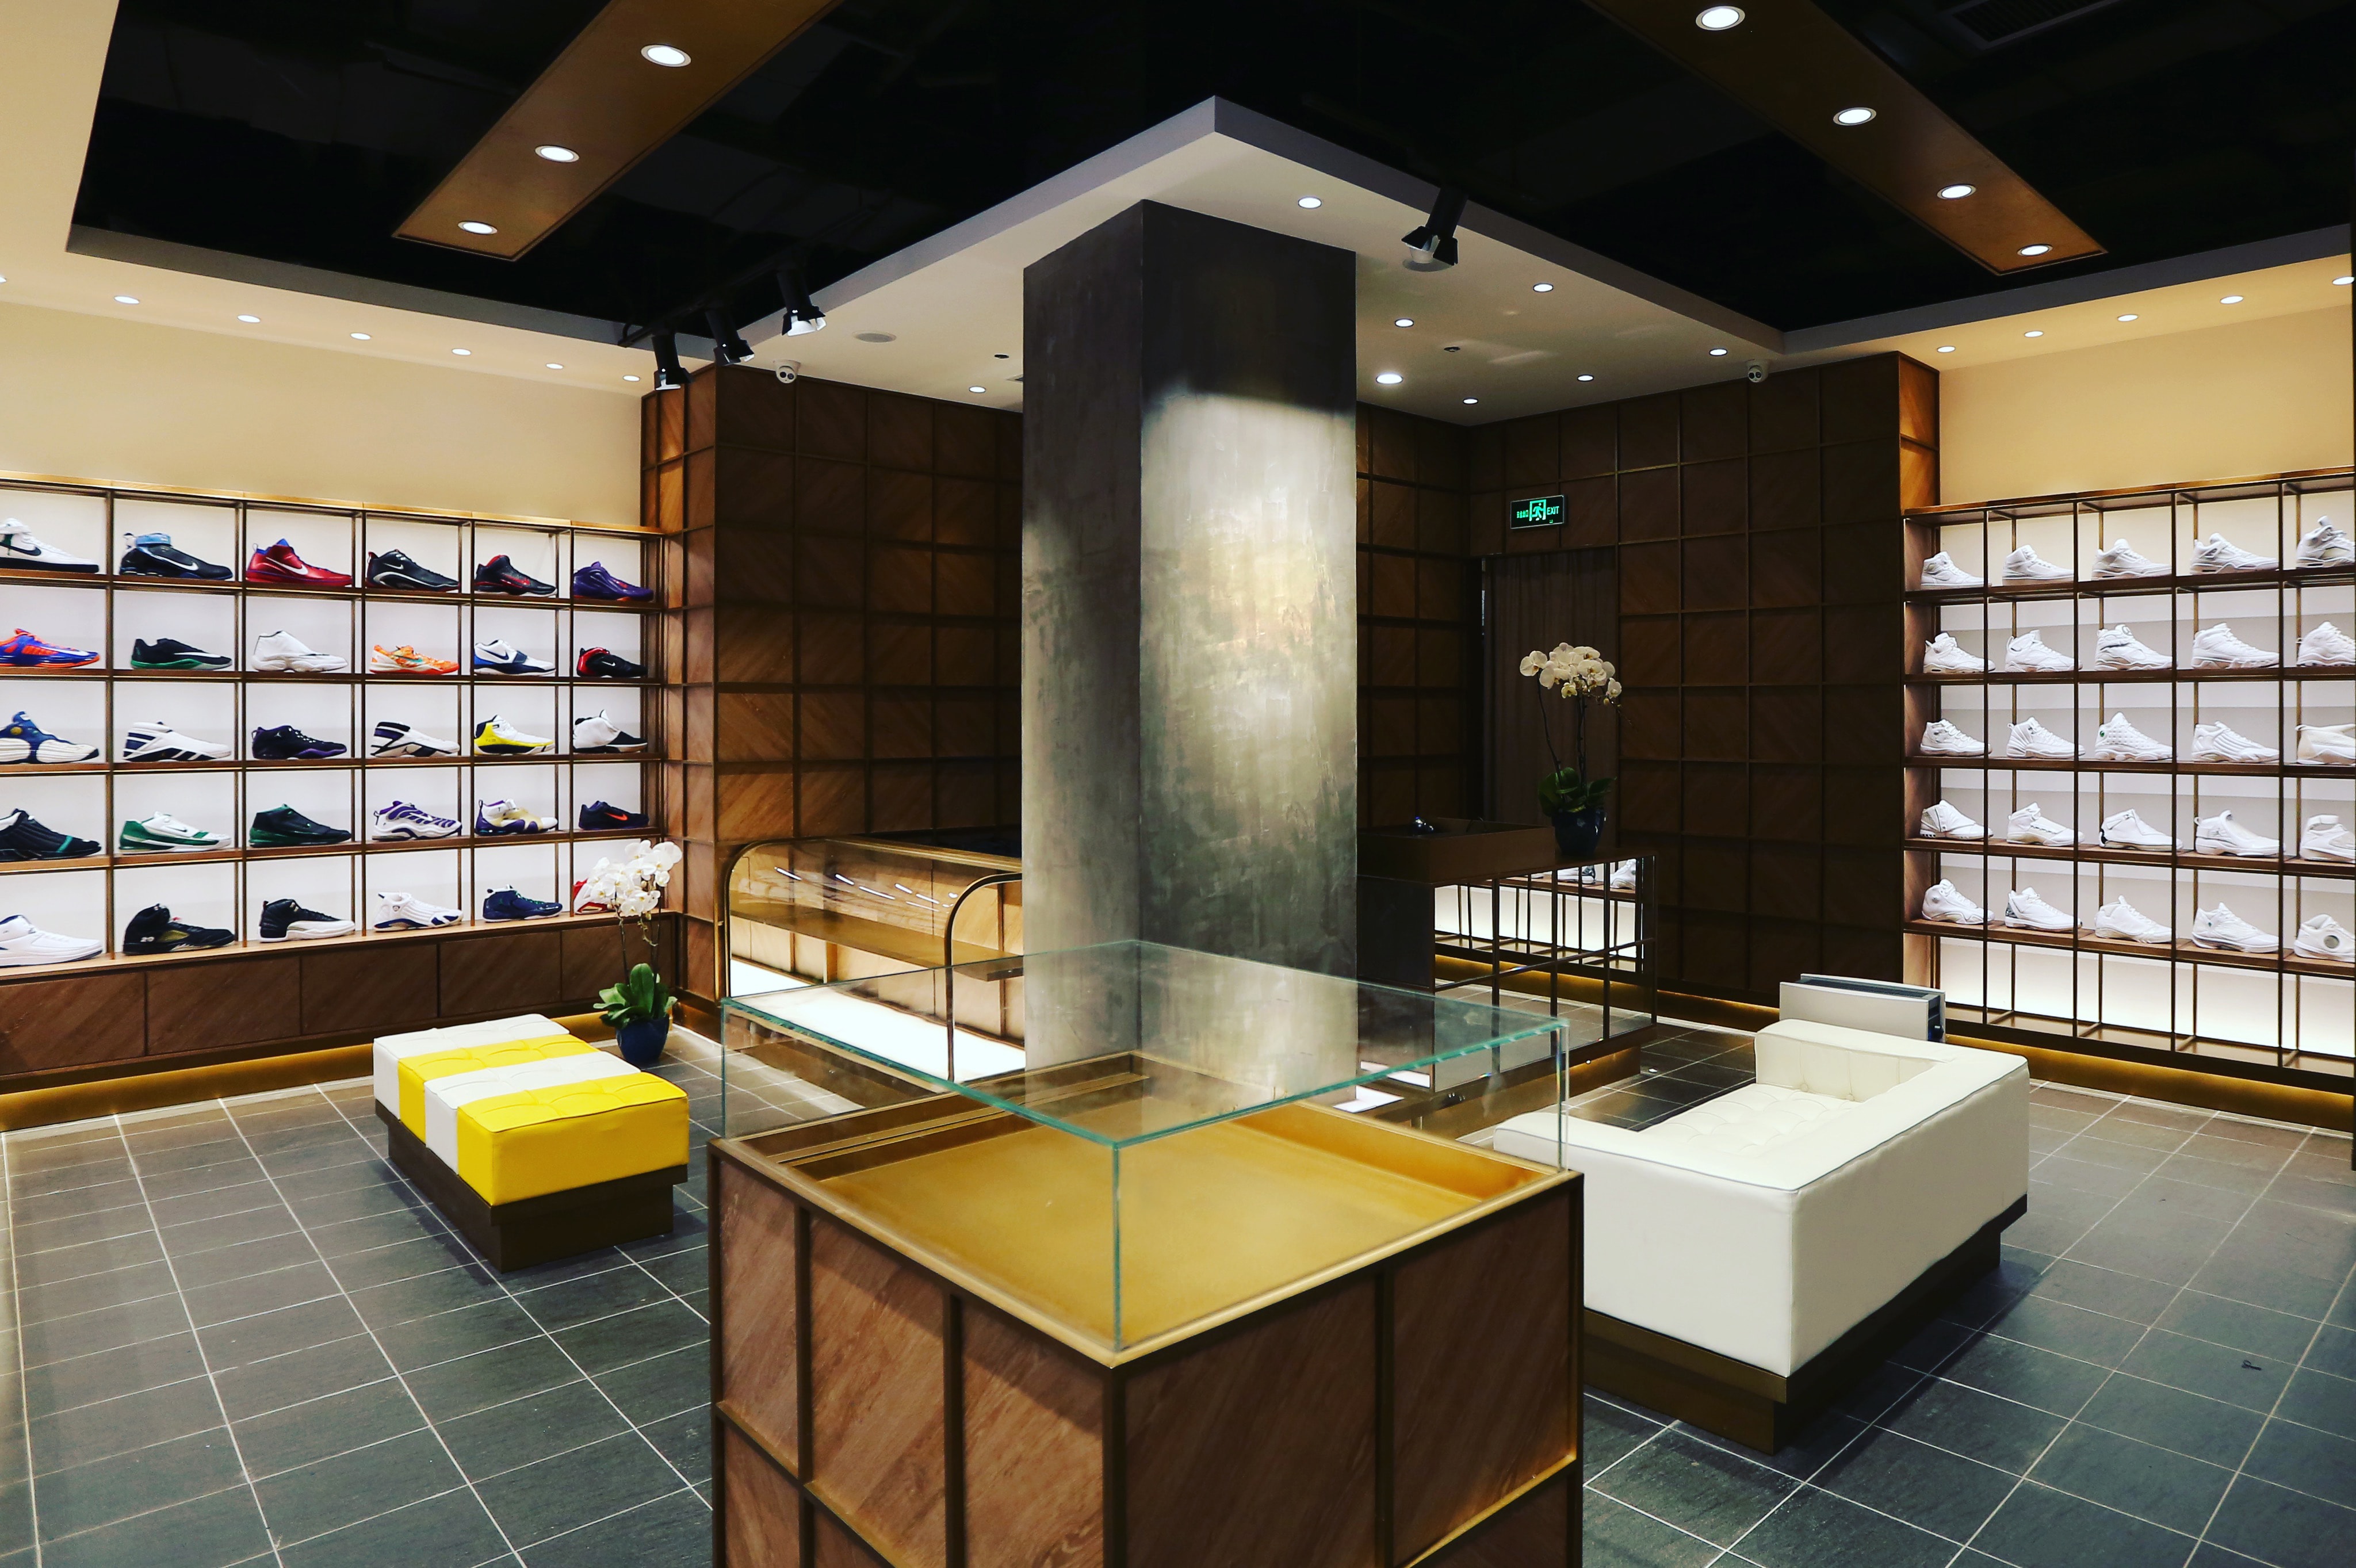 23 Sneaker Shop Beijing